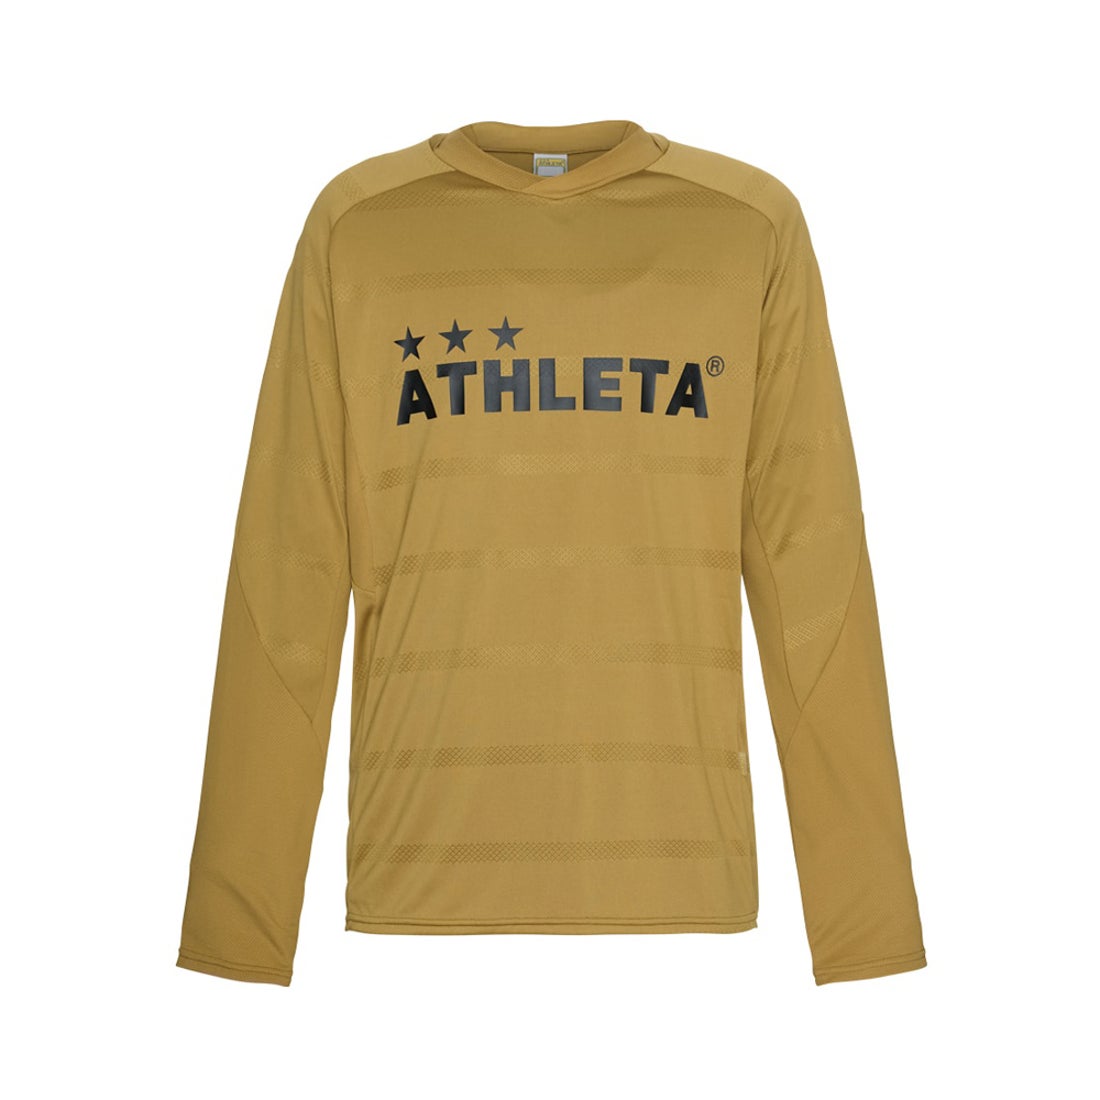 ATHLETA アスレタ プラクティスシャツ ジュニア(ゴールド) 02370J 58 トレーニングウェア -サッカーショップSWS